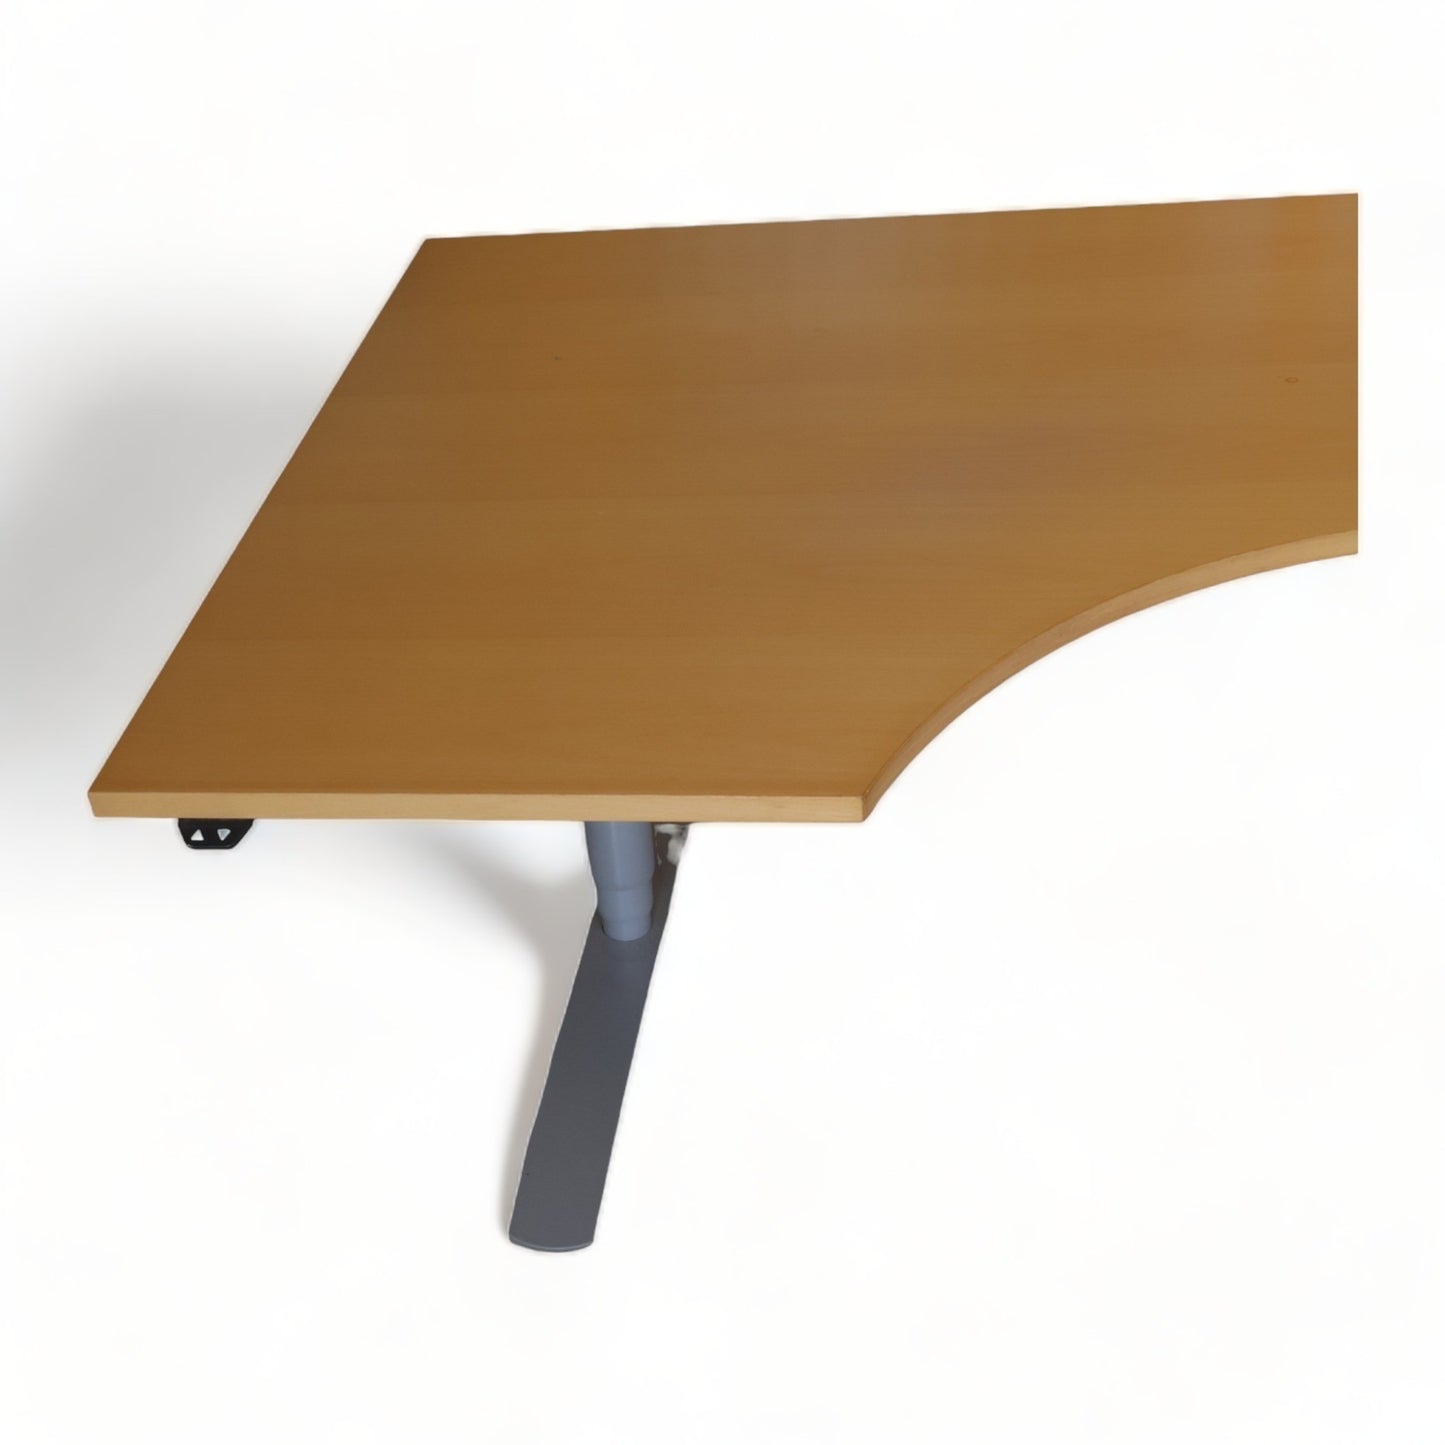 Kvalitetsikret | 280x120, elektrisk hev/senk bord med sving